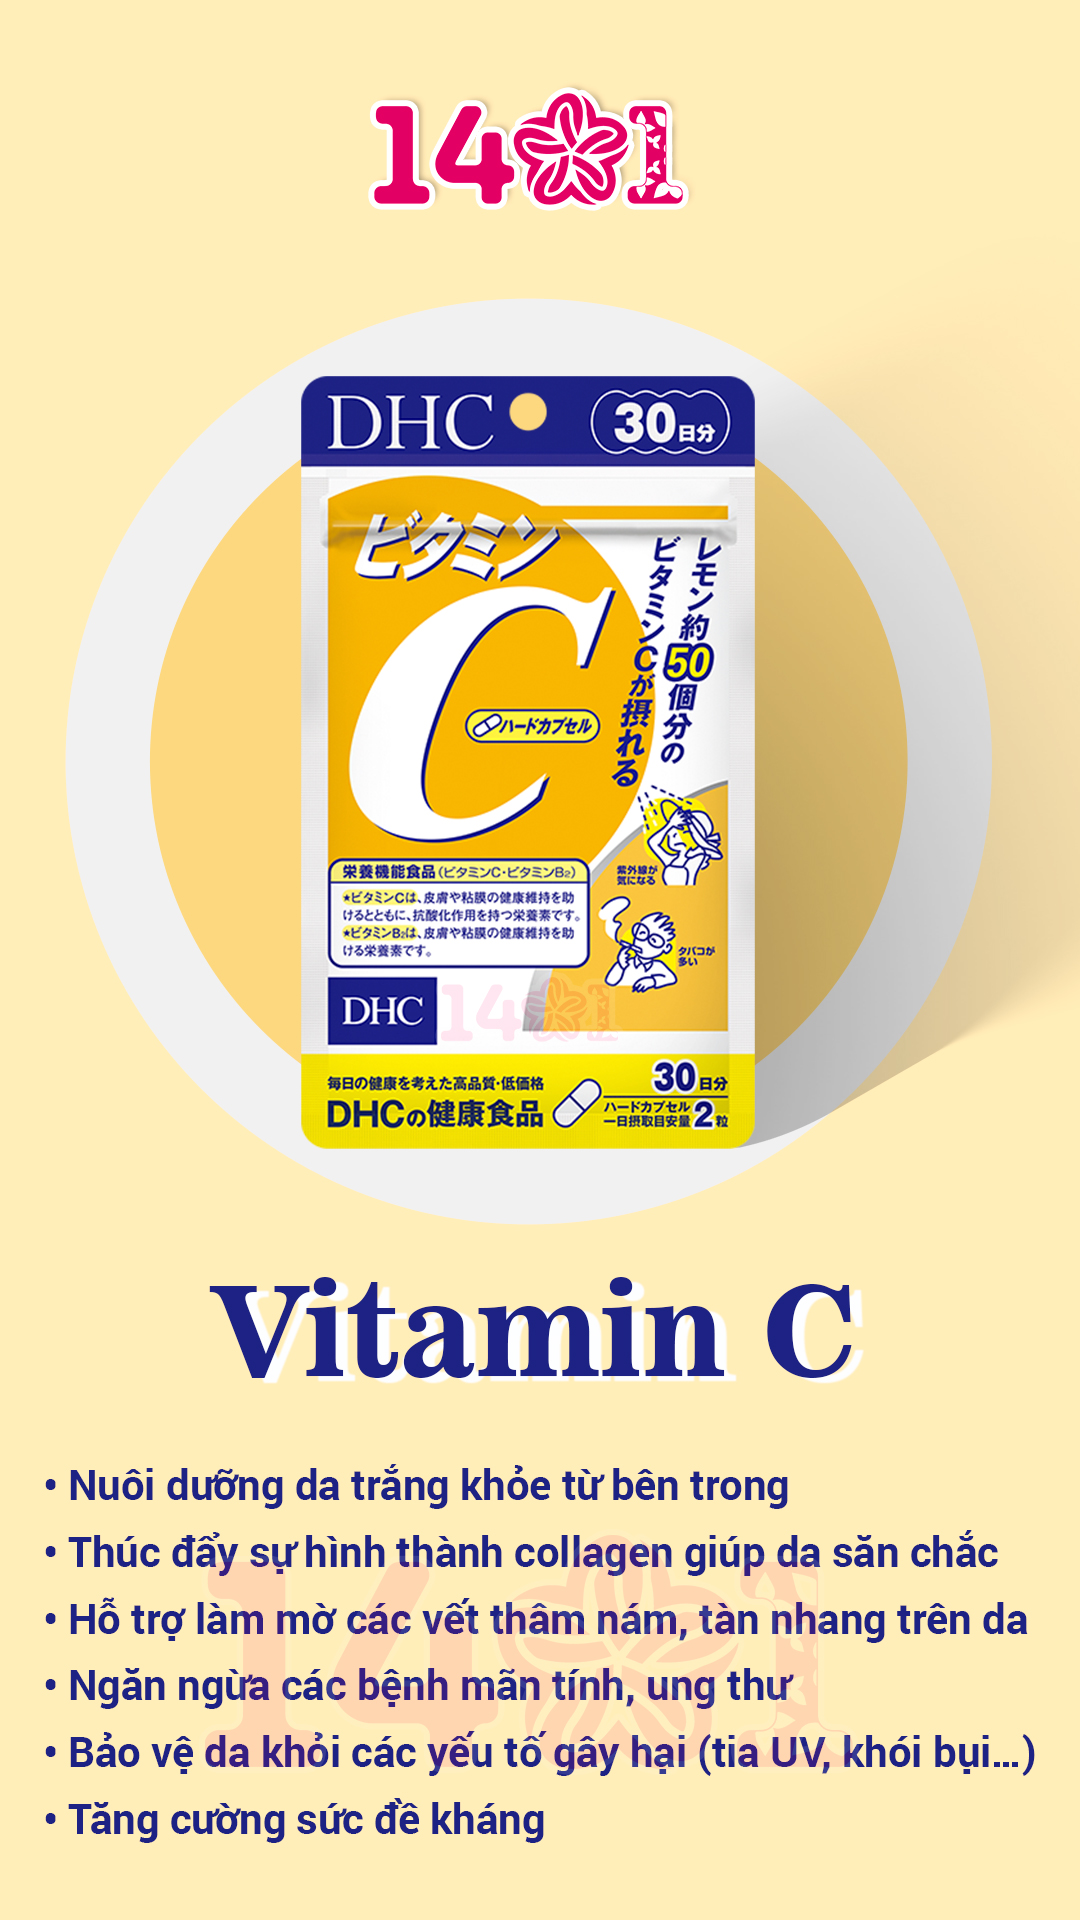 viên uống vitamin c xuất xứ nhật bản gói 60 viên dùng 30 ngày 1